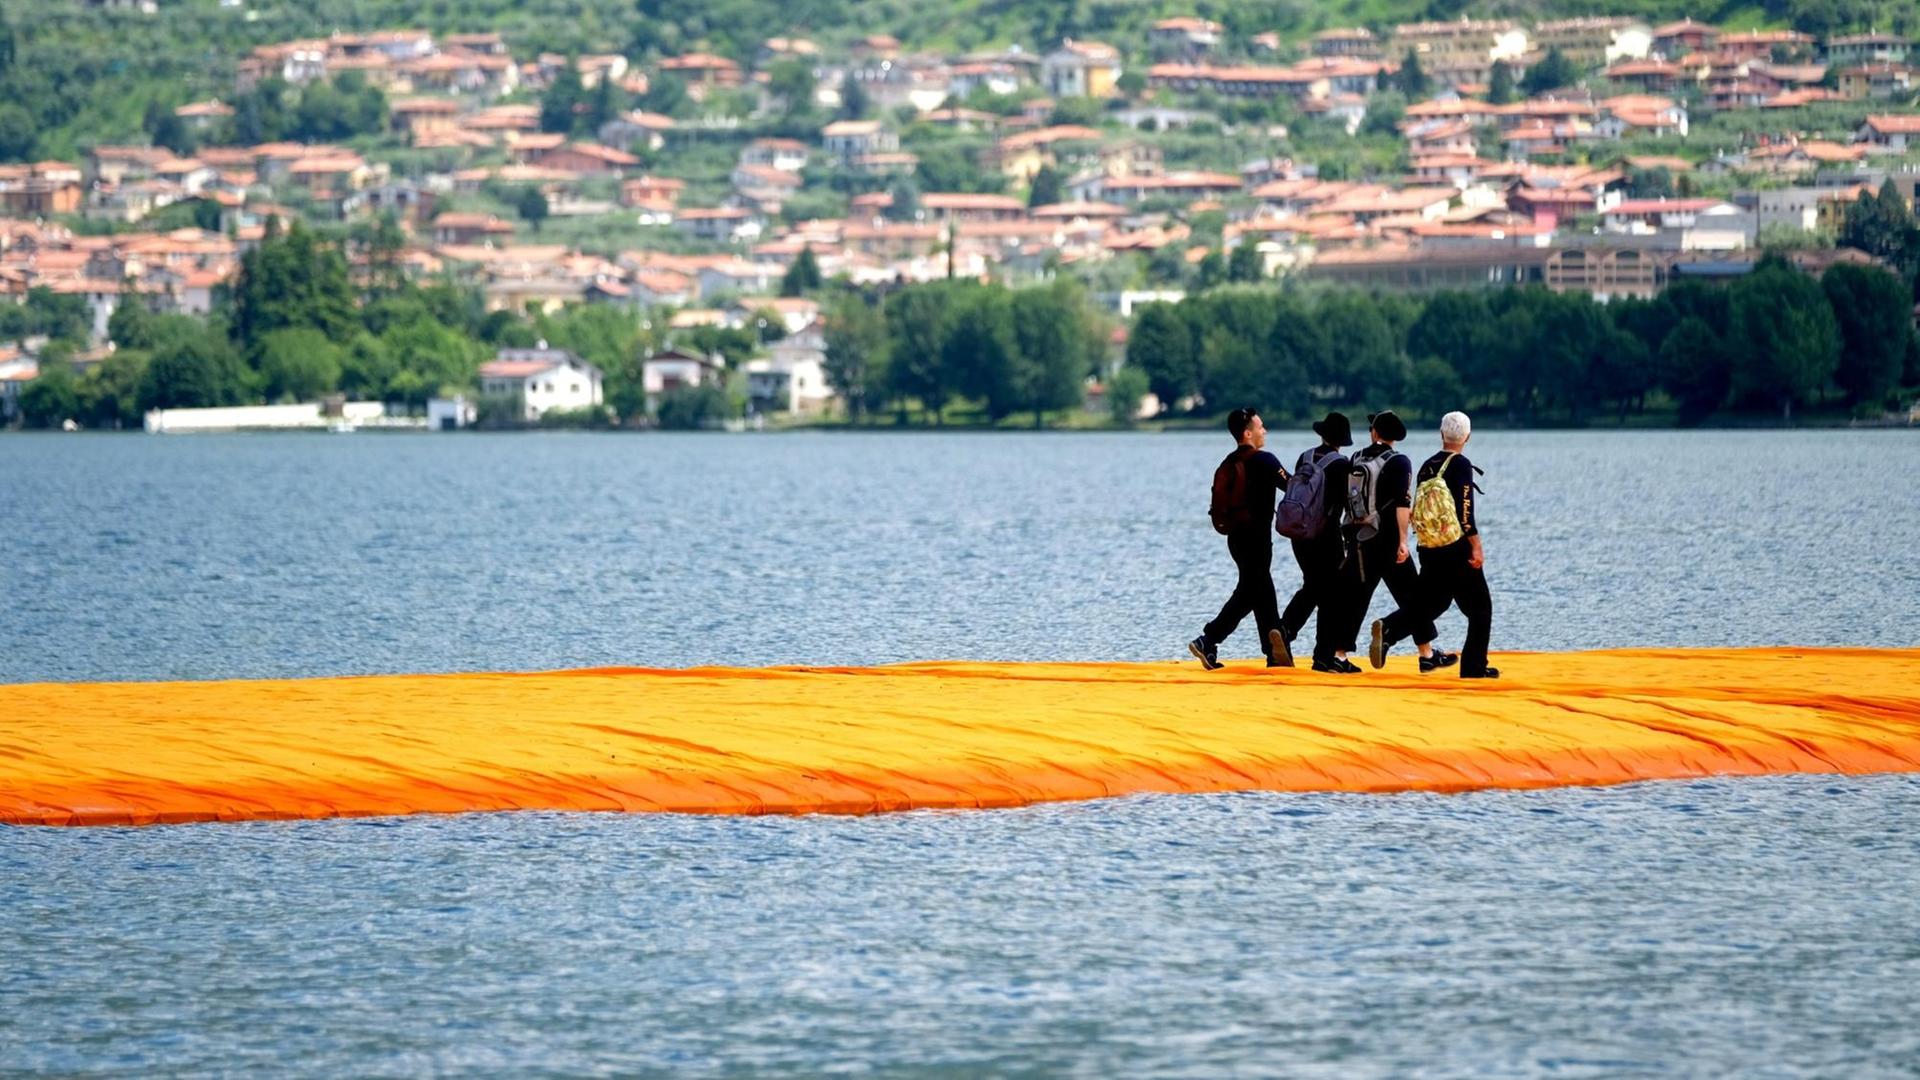 Menschen gehen am 17.06.2016 über orangefarbene, schwimmenden Stege im Rahmen des Projekts "The Floating Piers" von Christo auf dem Lago d'Iseo in Italien.